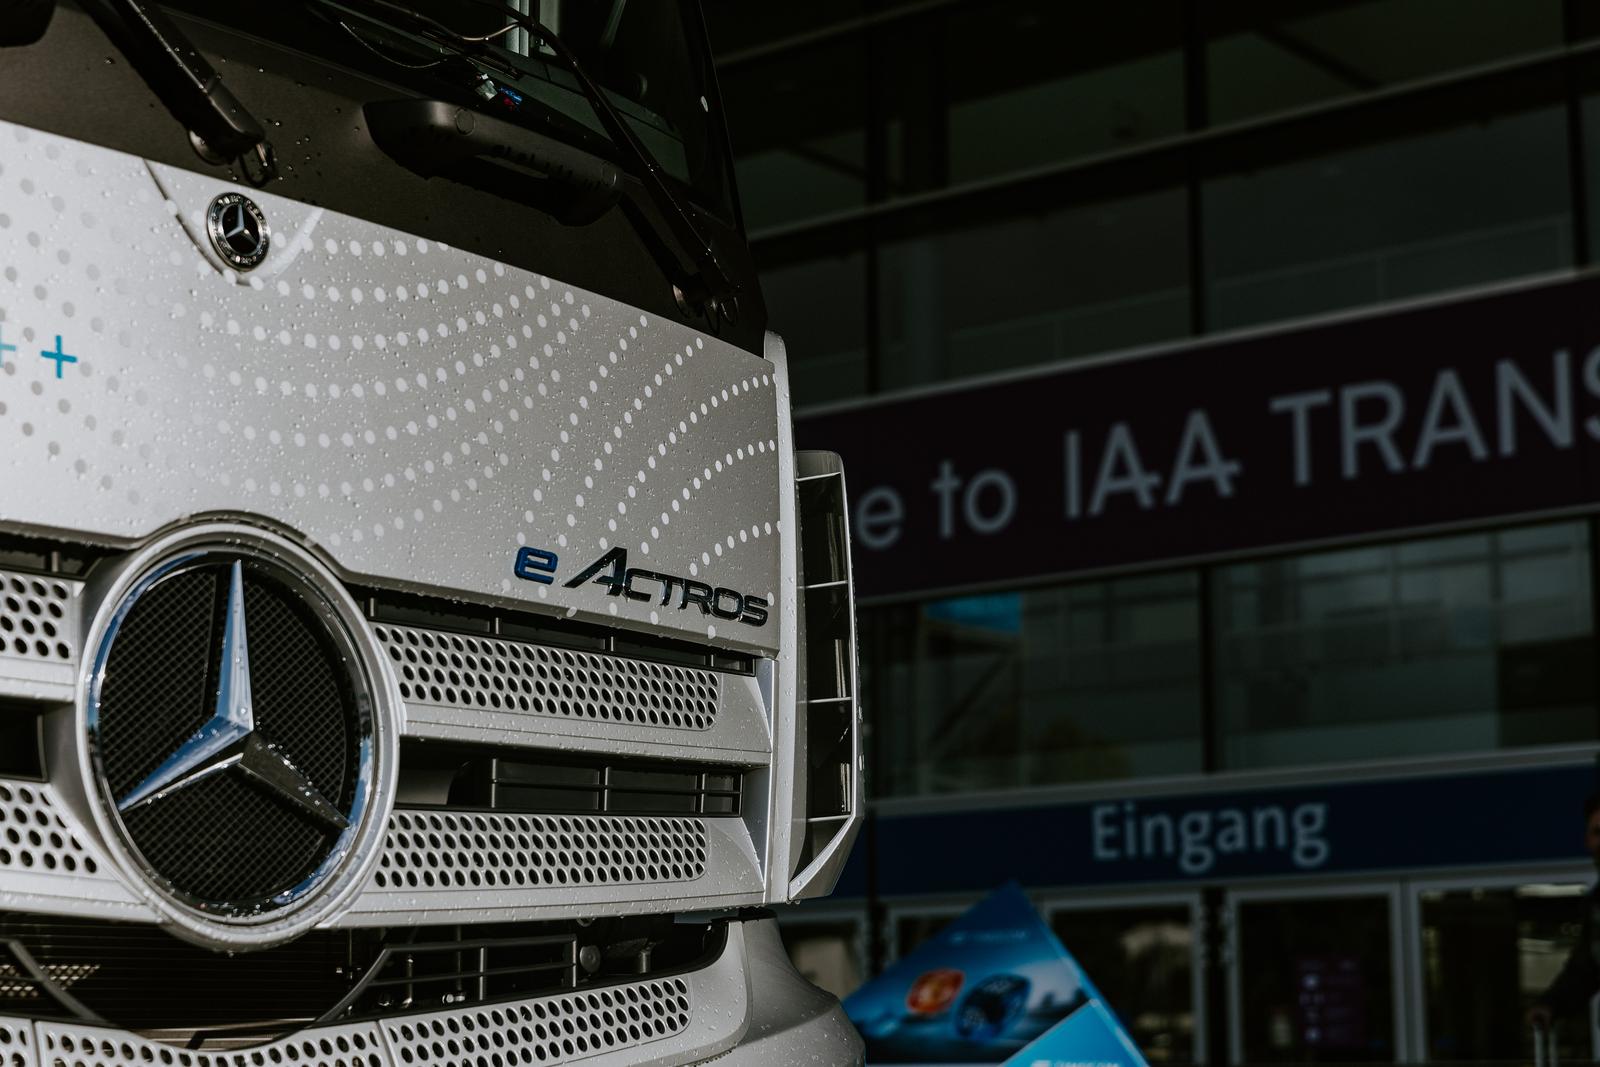 18.09.2022., Hannover, Njemacka - Mercedes-Benz Truck na ekskluzivnoj veceri za medije dan uoci otvaranja sajma komercijalnih vozila IAA TRANSPORTATION predstavio je "koncept prototip" modela eActros LongHaul koji bi mogao biti na cesti 2024. godine. S jednim punjenjem eActros LongHaul ce imati domet od oko 500 kilometara, a puniti ce se za manje od 30 minuta na punjacu od jednog megavata. Prvi prototipovi su vec prosli intenzivna testiranja a na javnim cestama ce biti testirani jos ove godine. Tri instalirane baterije imaju kapacitet od preko 600 kWh. Dva elektromotora kao dio nove e-osovine generiraju kontinuiranu snagu od 400kW te maksimalnu snagu od preko 600kW. 









 Photo: Denis Kapetanovic/PIXSELL